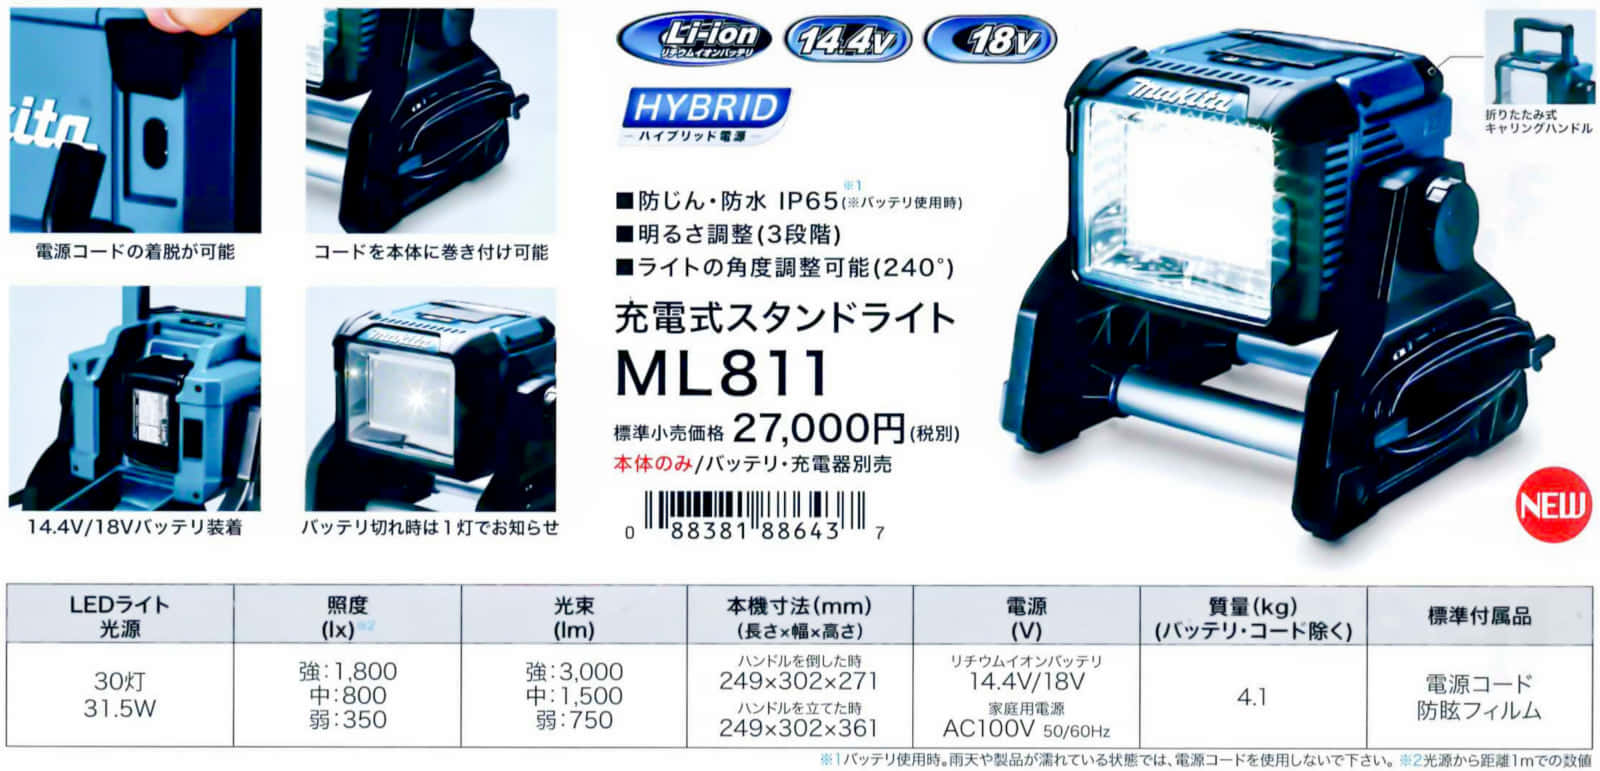 マキタ スタンドライト 14.4V/18Vバッテリ・AC100V両用ML811